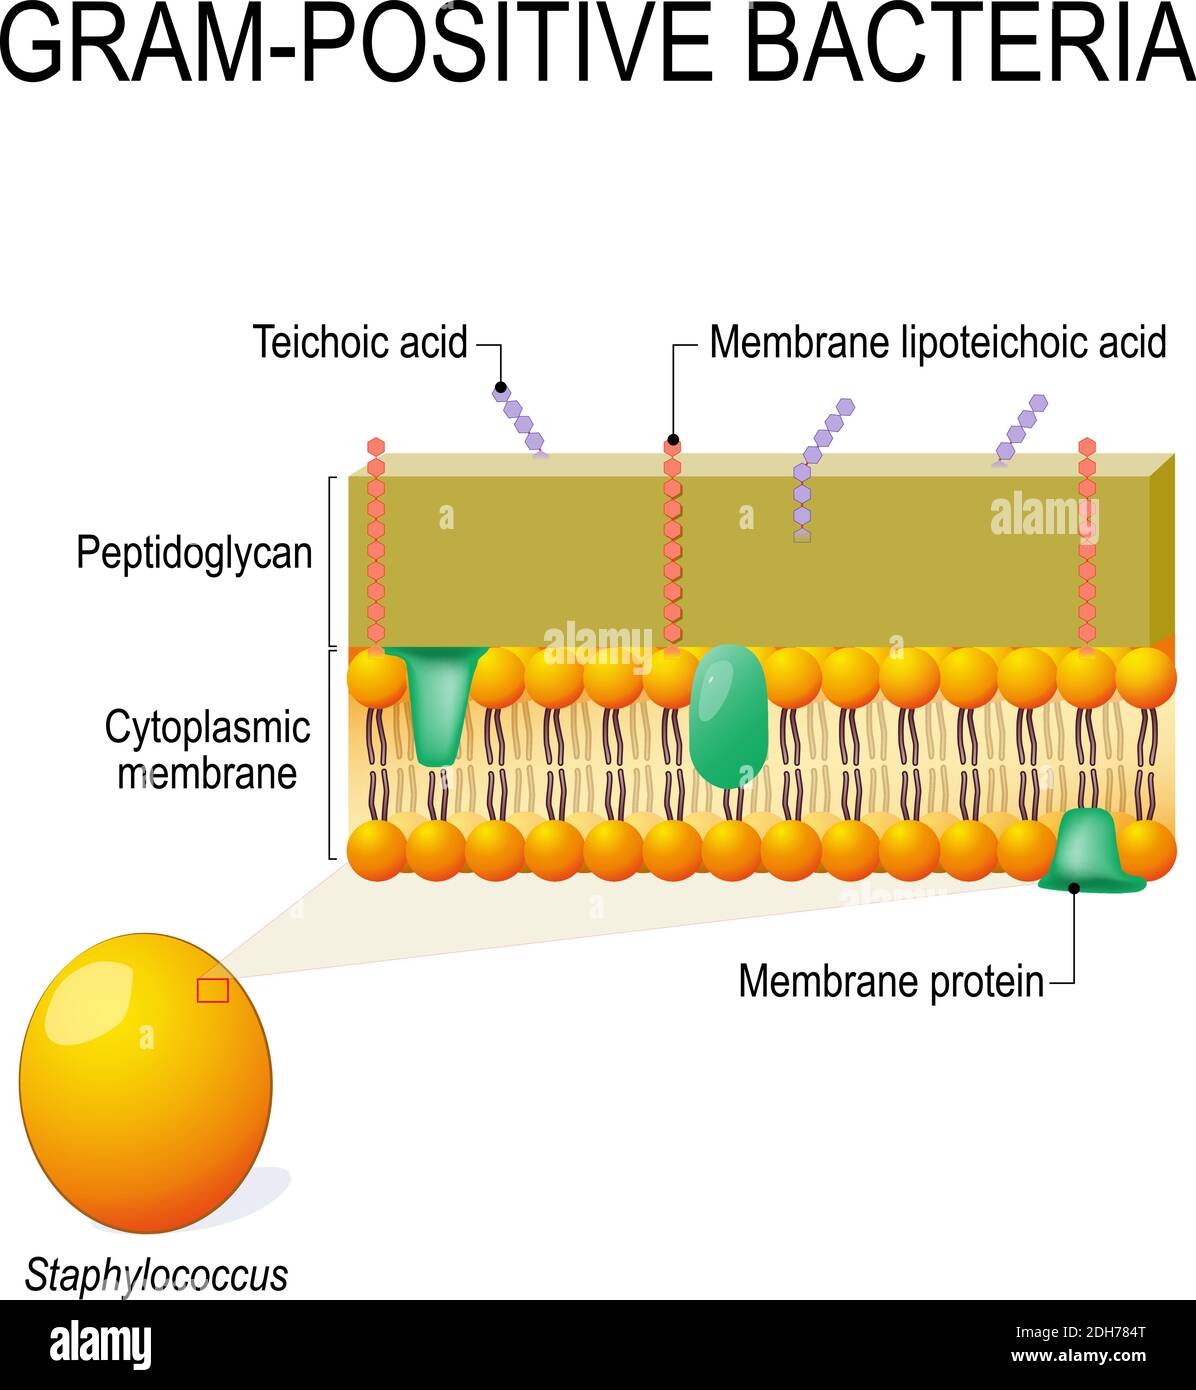 Structure de la paroi cellulaire des bactéries Gram-positives, par exemple Staphylococcus. Schéma vectoriel à usage éducatif, médical, biologique et scientifique Illustration de Vecteur